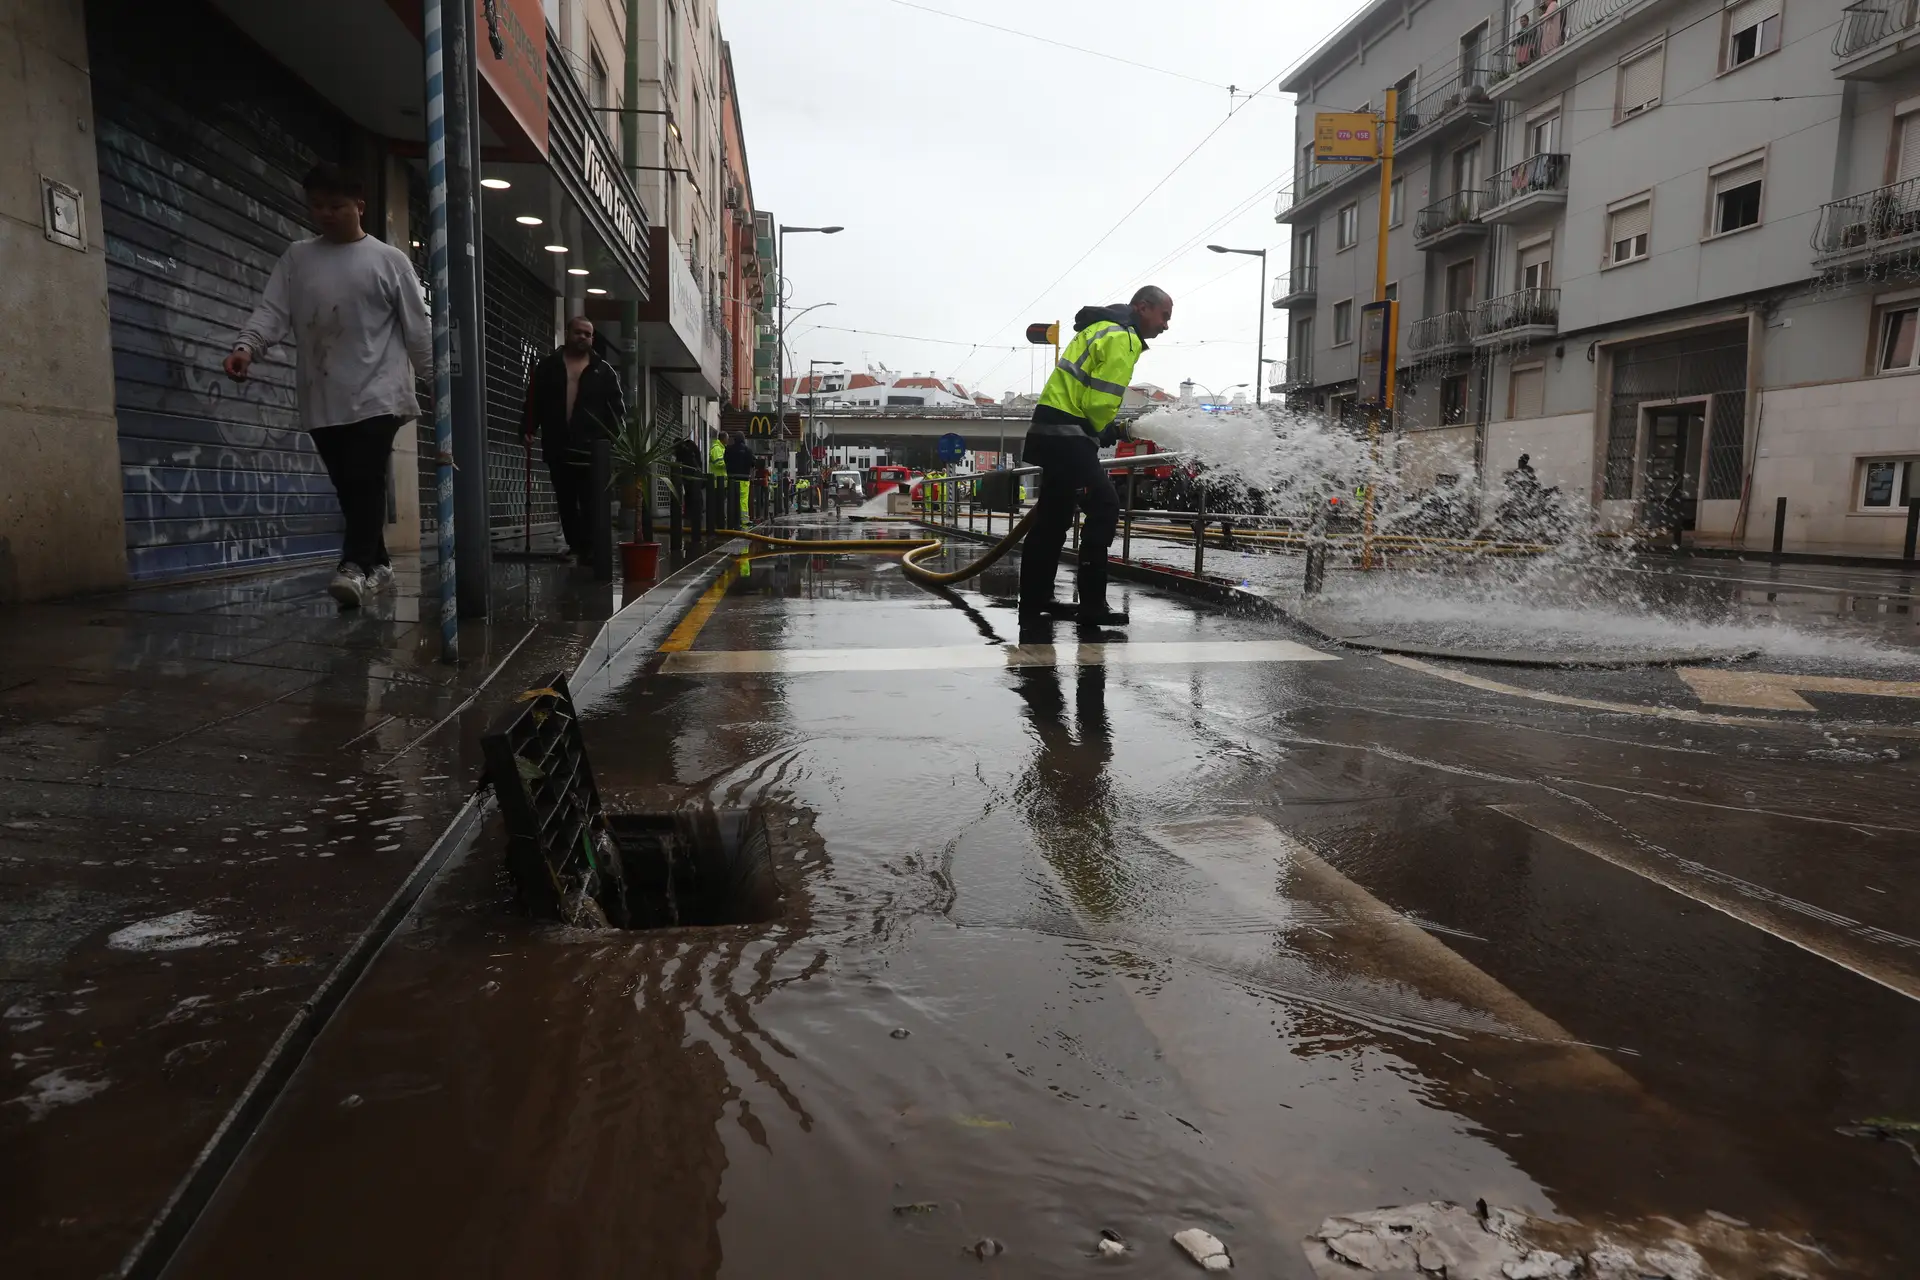 Nunca choveu tanto em Lisboa em 24h e há um fenómeno no ar com mais água para descarregar: chama-se convecção e este artigo explica-o